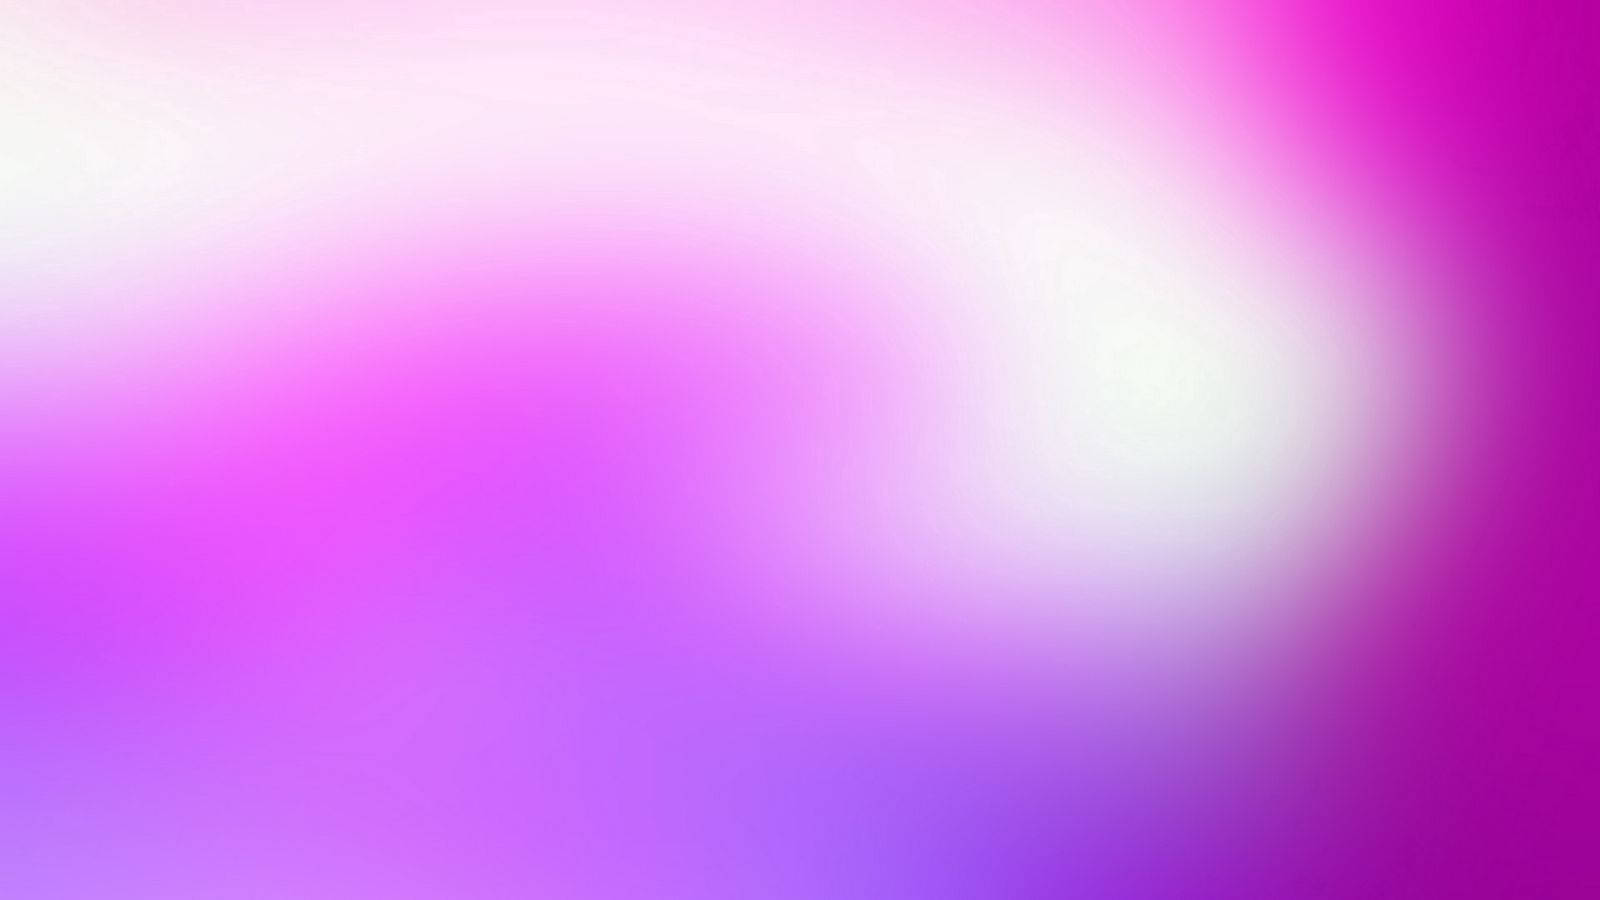 Njutav Kristallklar Bildkvalitet Med Ljus Vit Färg På Dator- Eller Mobilskärmsbakgrund. Wallpaper